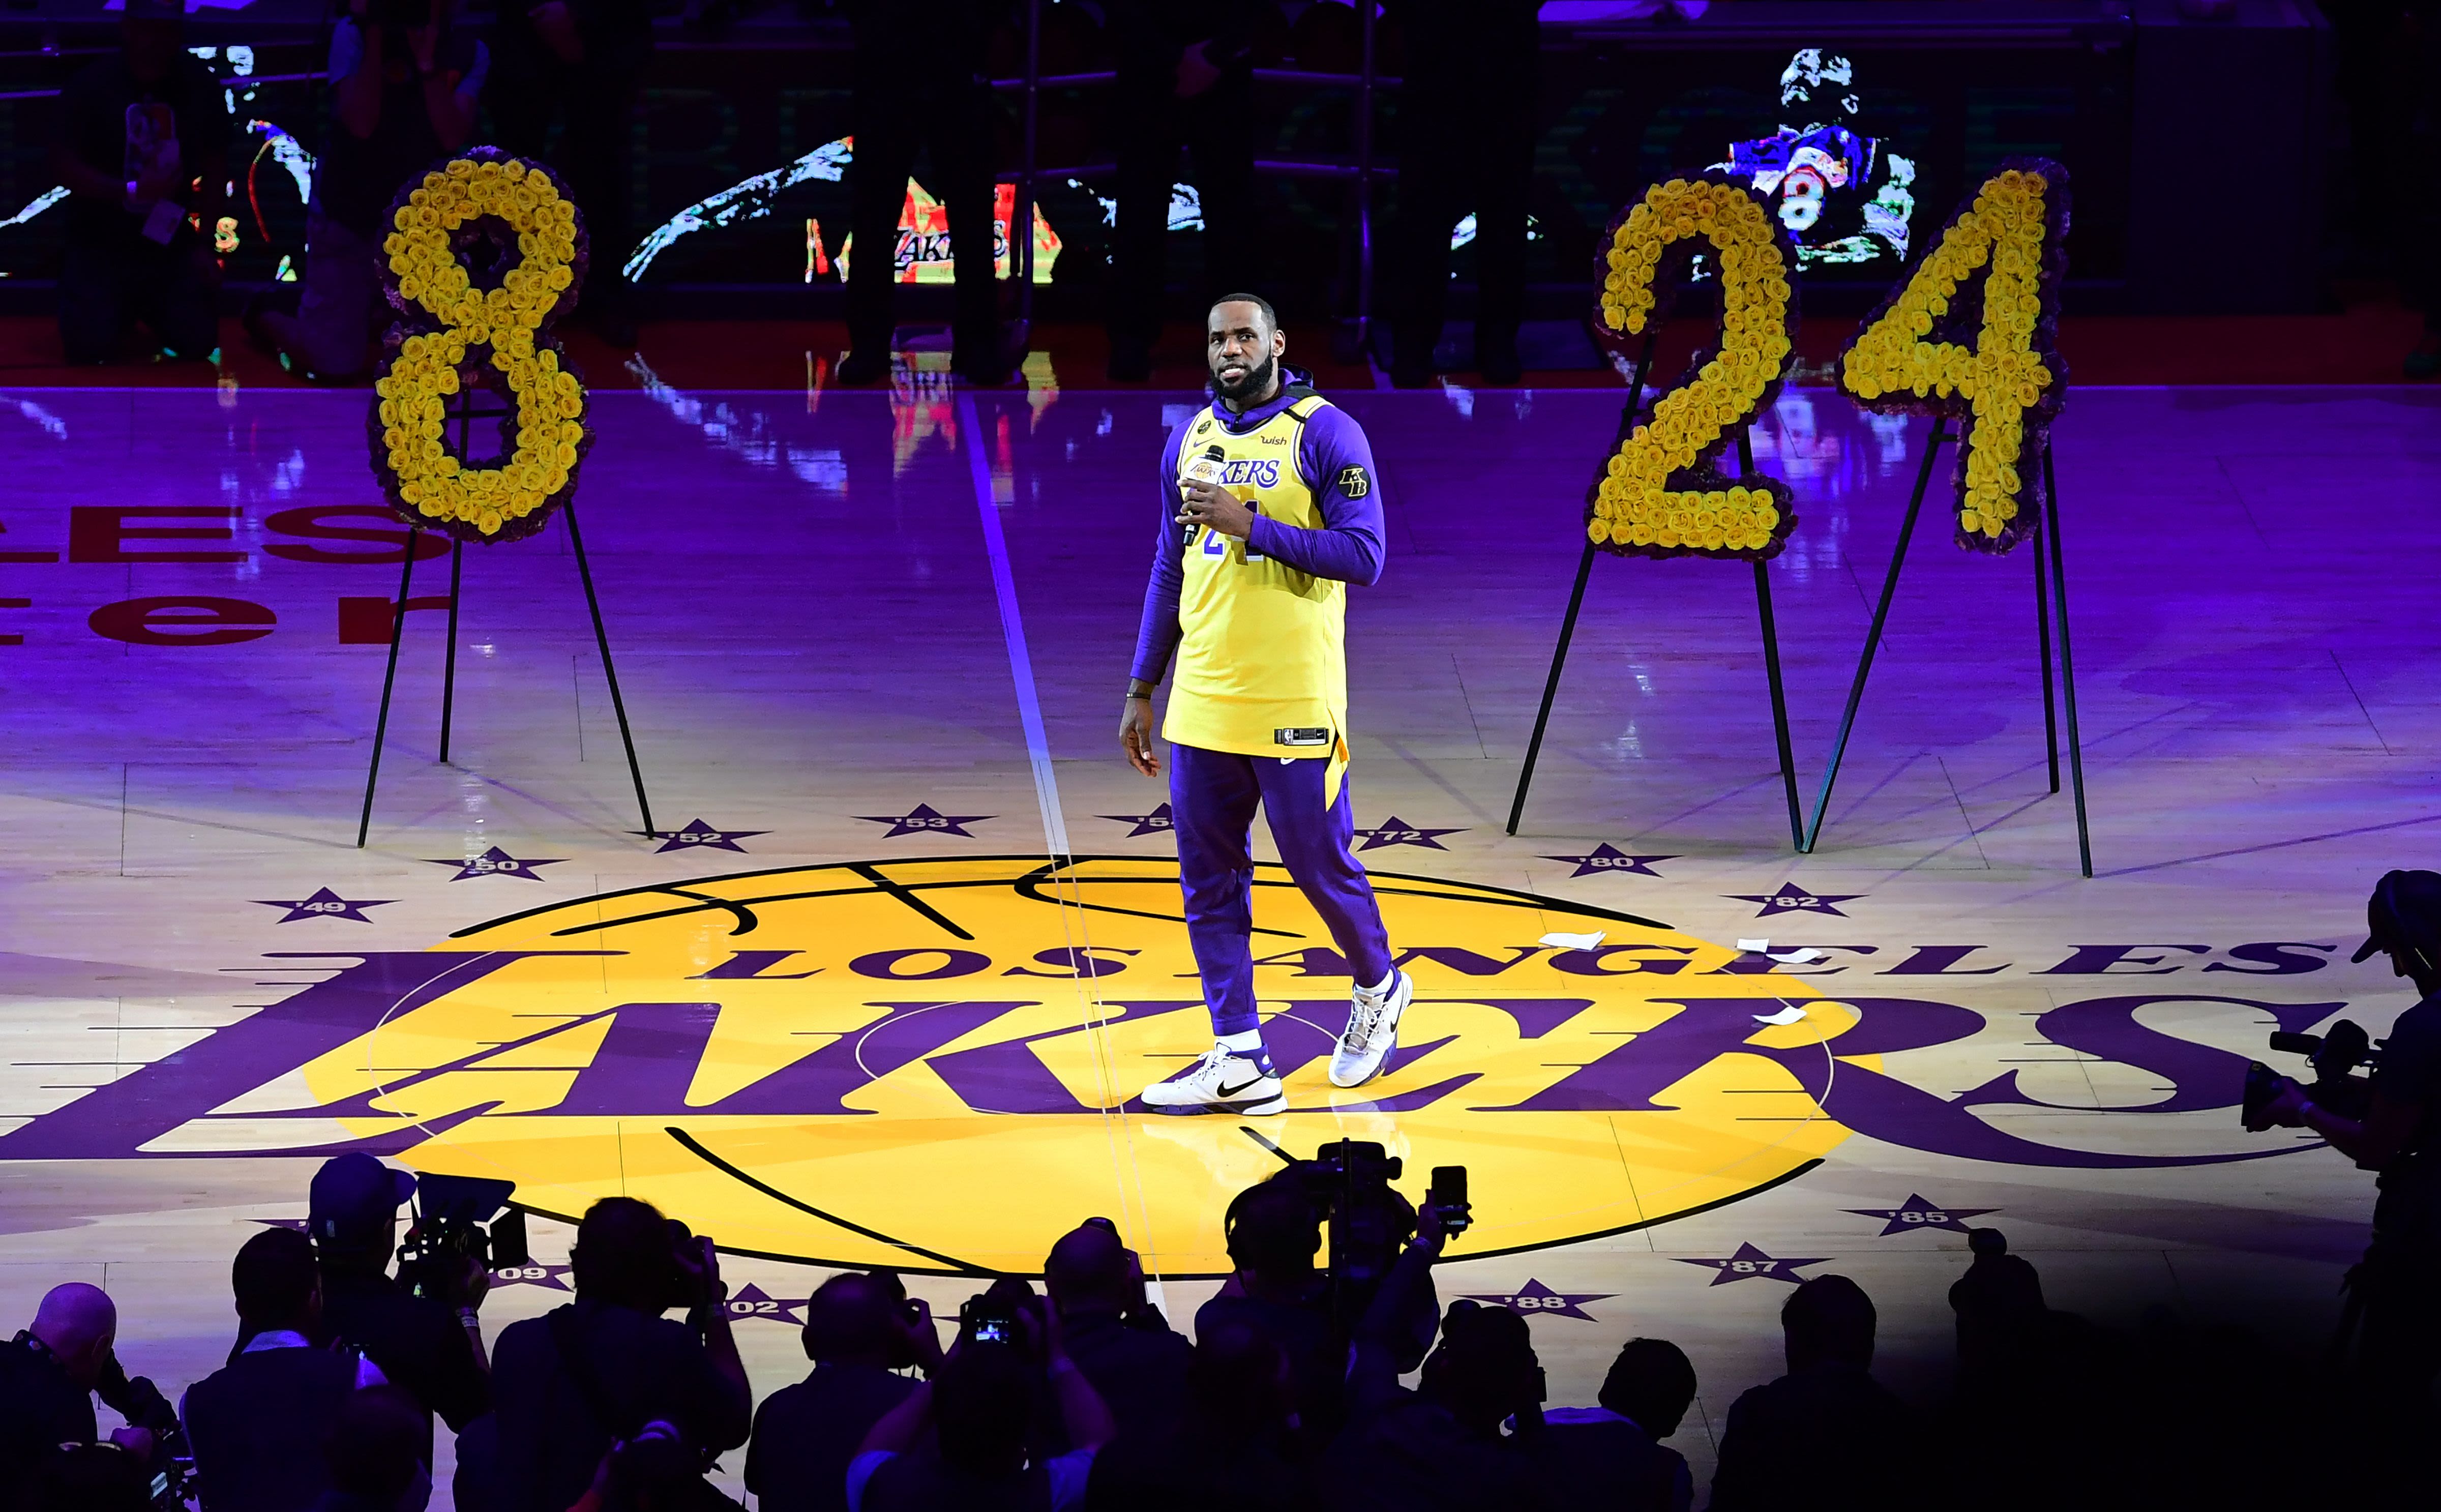 Lakers will wear 'Black Mamba' uniforms